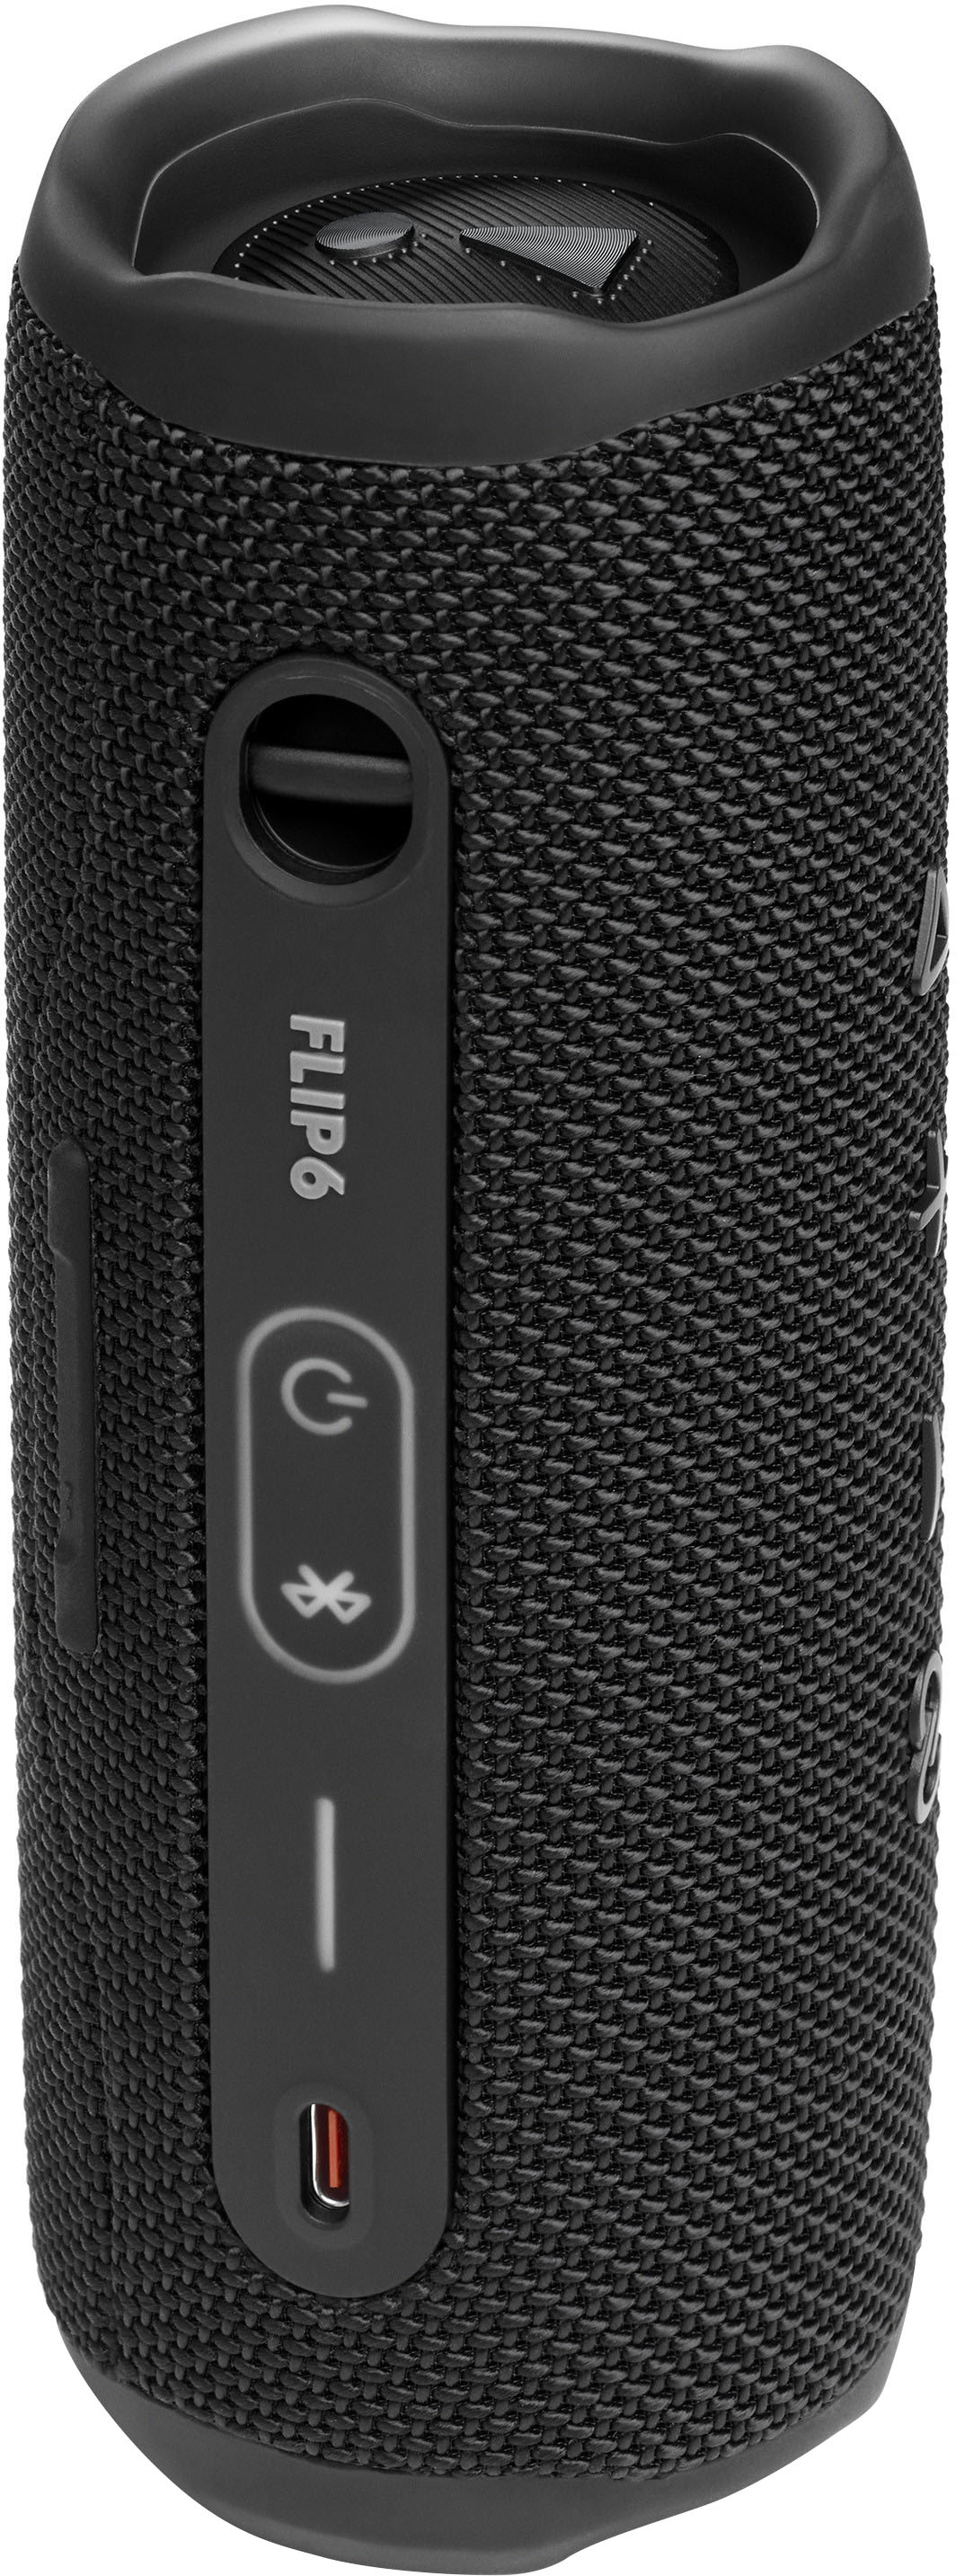 オーディオ機器 スピーカー JBL FLIP6 Portable Waterproof Speaker Black JBLFLIP6BLKAM - Best Buy